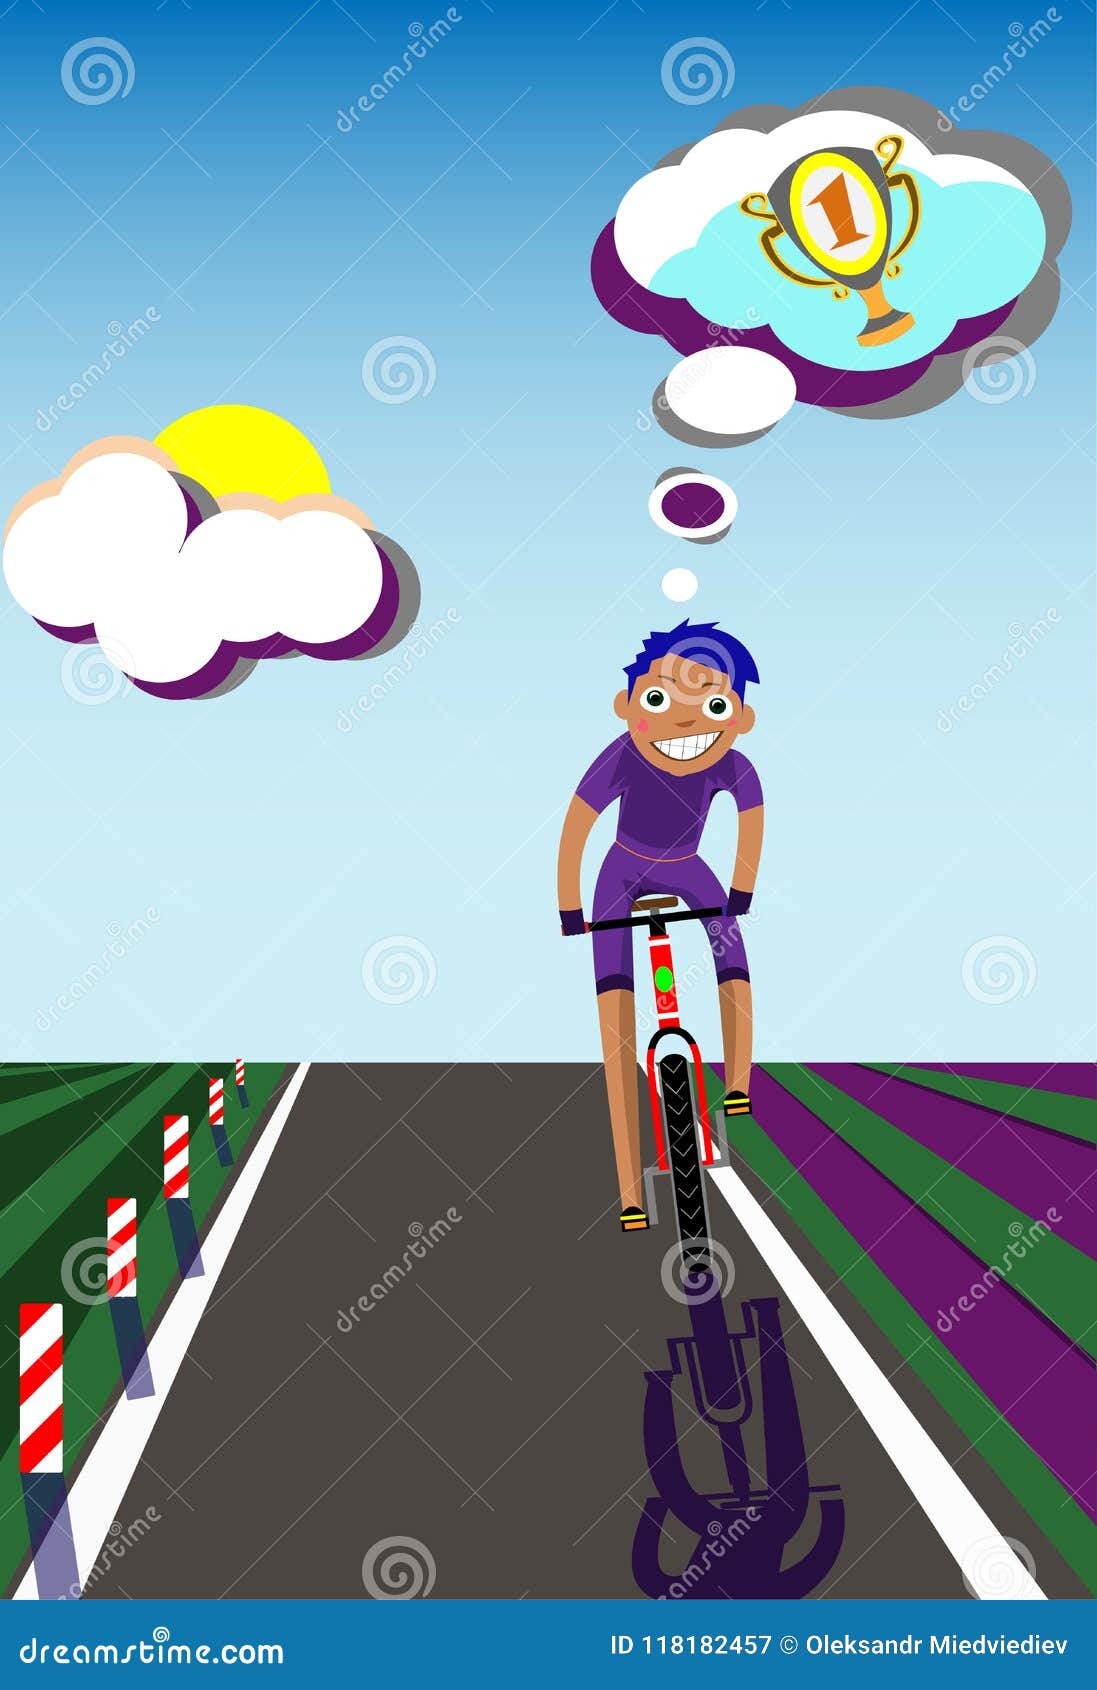 Мечтаешь о велосипеде. Мечтает о велосипеде велосипедист мечтает машине. Велогонщик на пьедестале рисунок. Пешеход мечтает о велосипеде. Картинка велосипедист мечтает о машине.